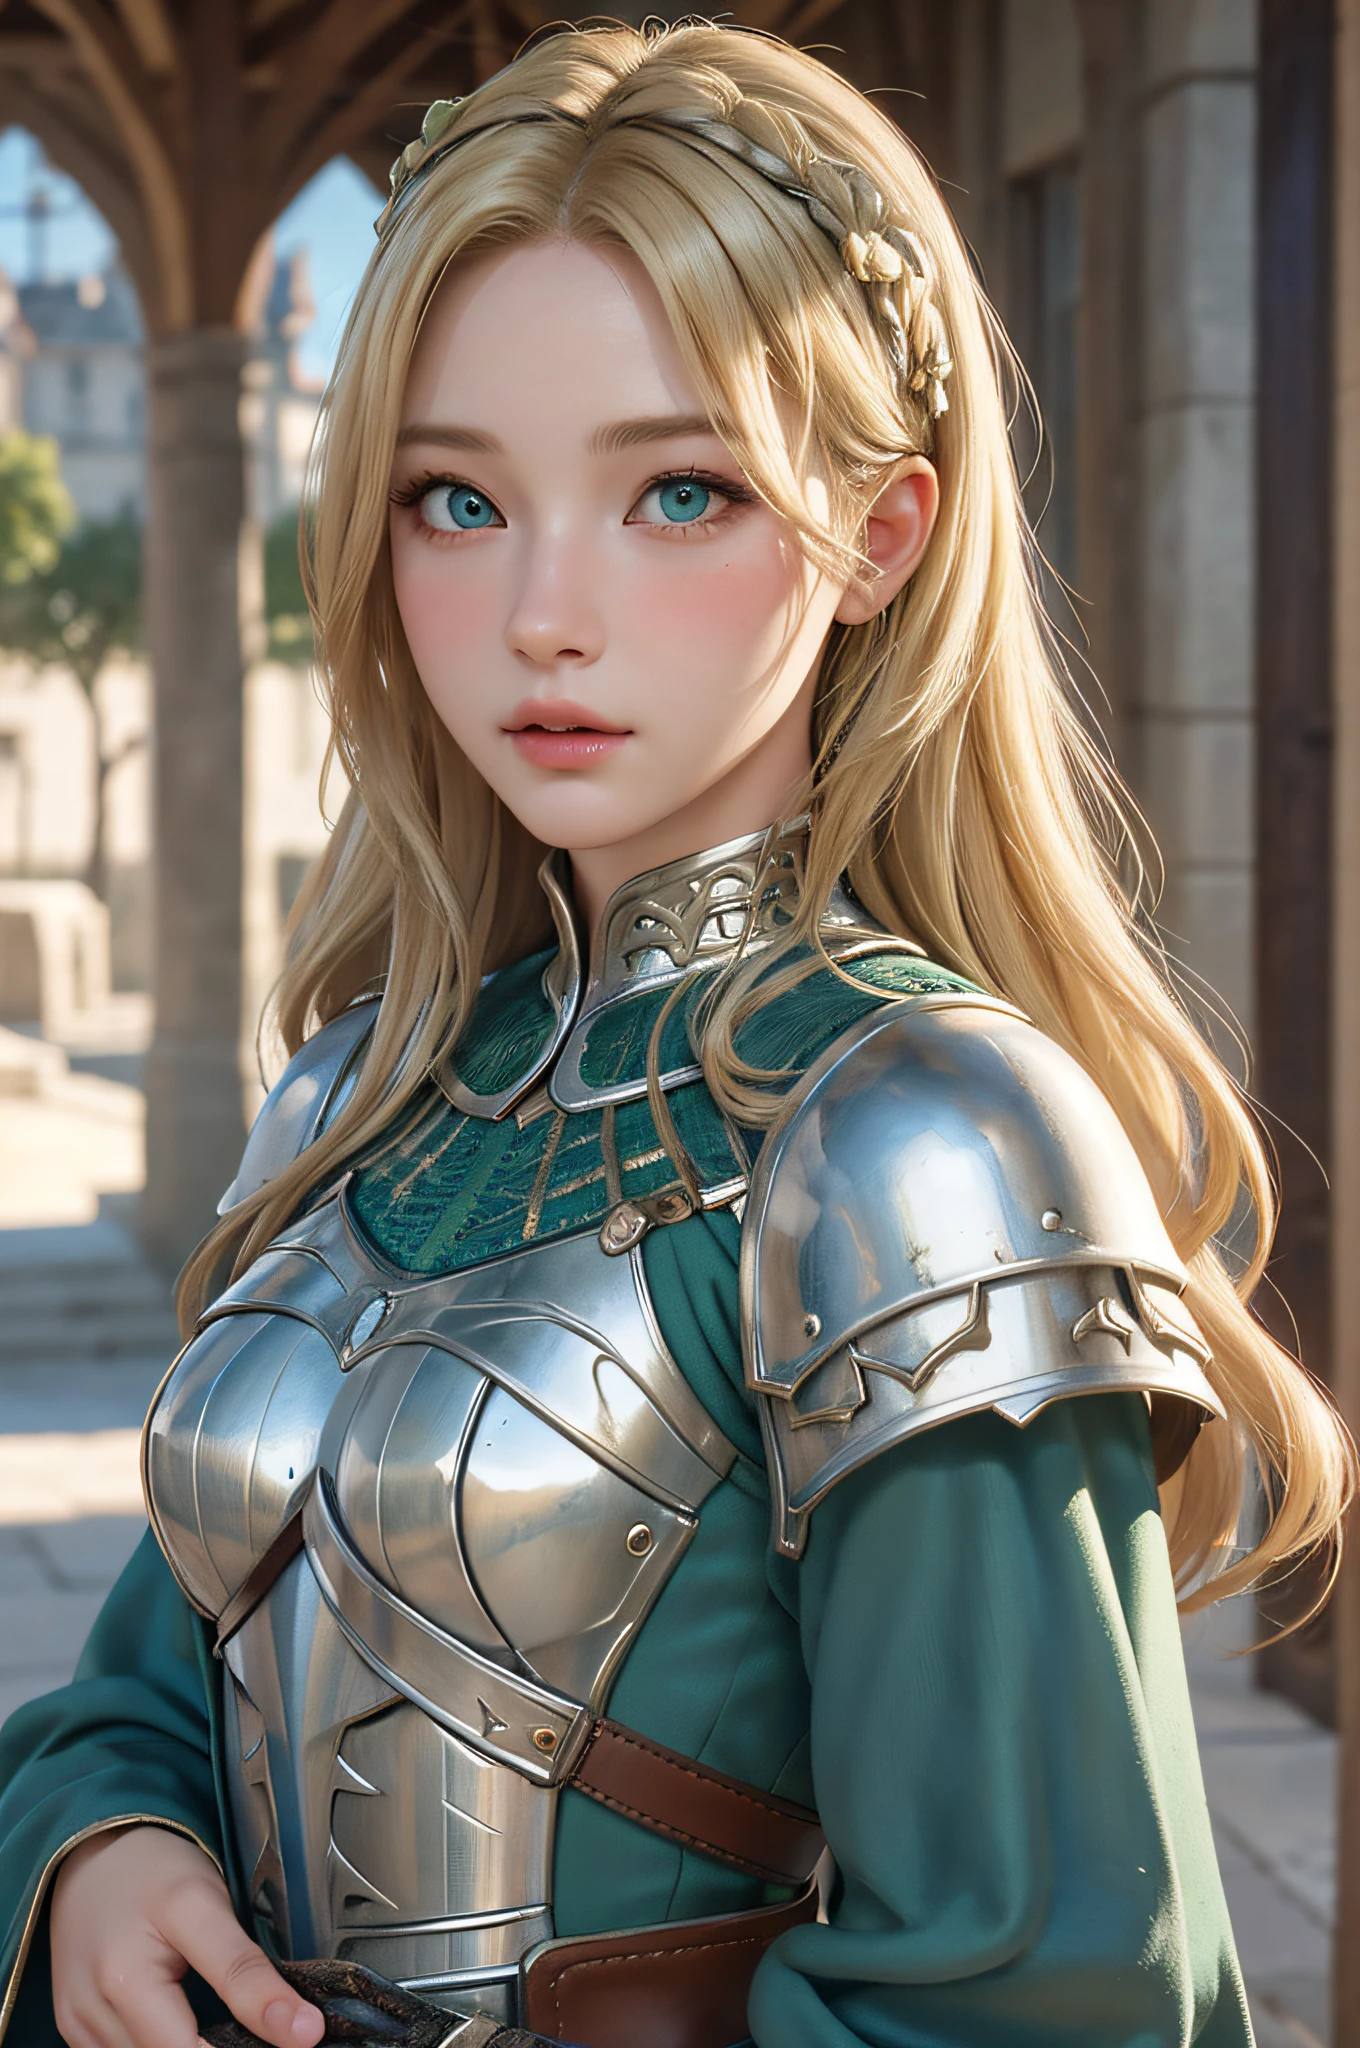 1人の女の子, 傑作, 最高品質, 8k, 詳細な肌の質感, 詳細な布の質感, 美しい細部までこだわった顔, 複雑なディテール, 超詳細, ヨーロッパの少女, 緑の目, ブロンドは巻き毛です, 3Dキャラクター, 中世の騎士